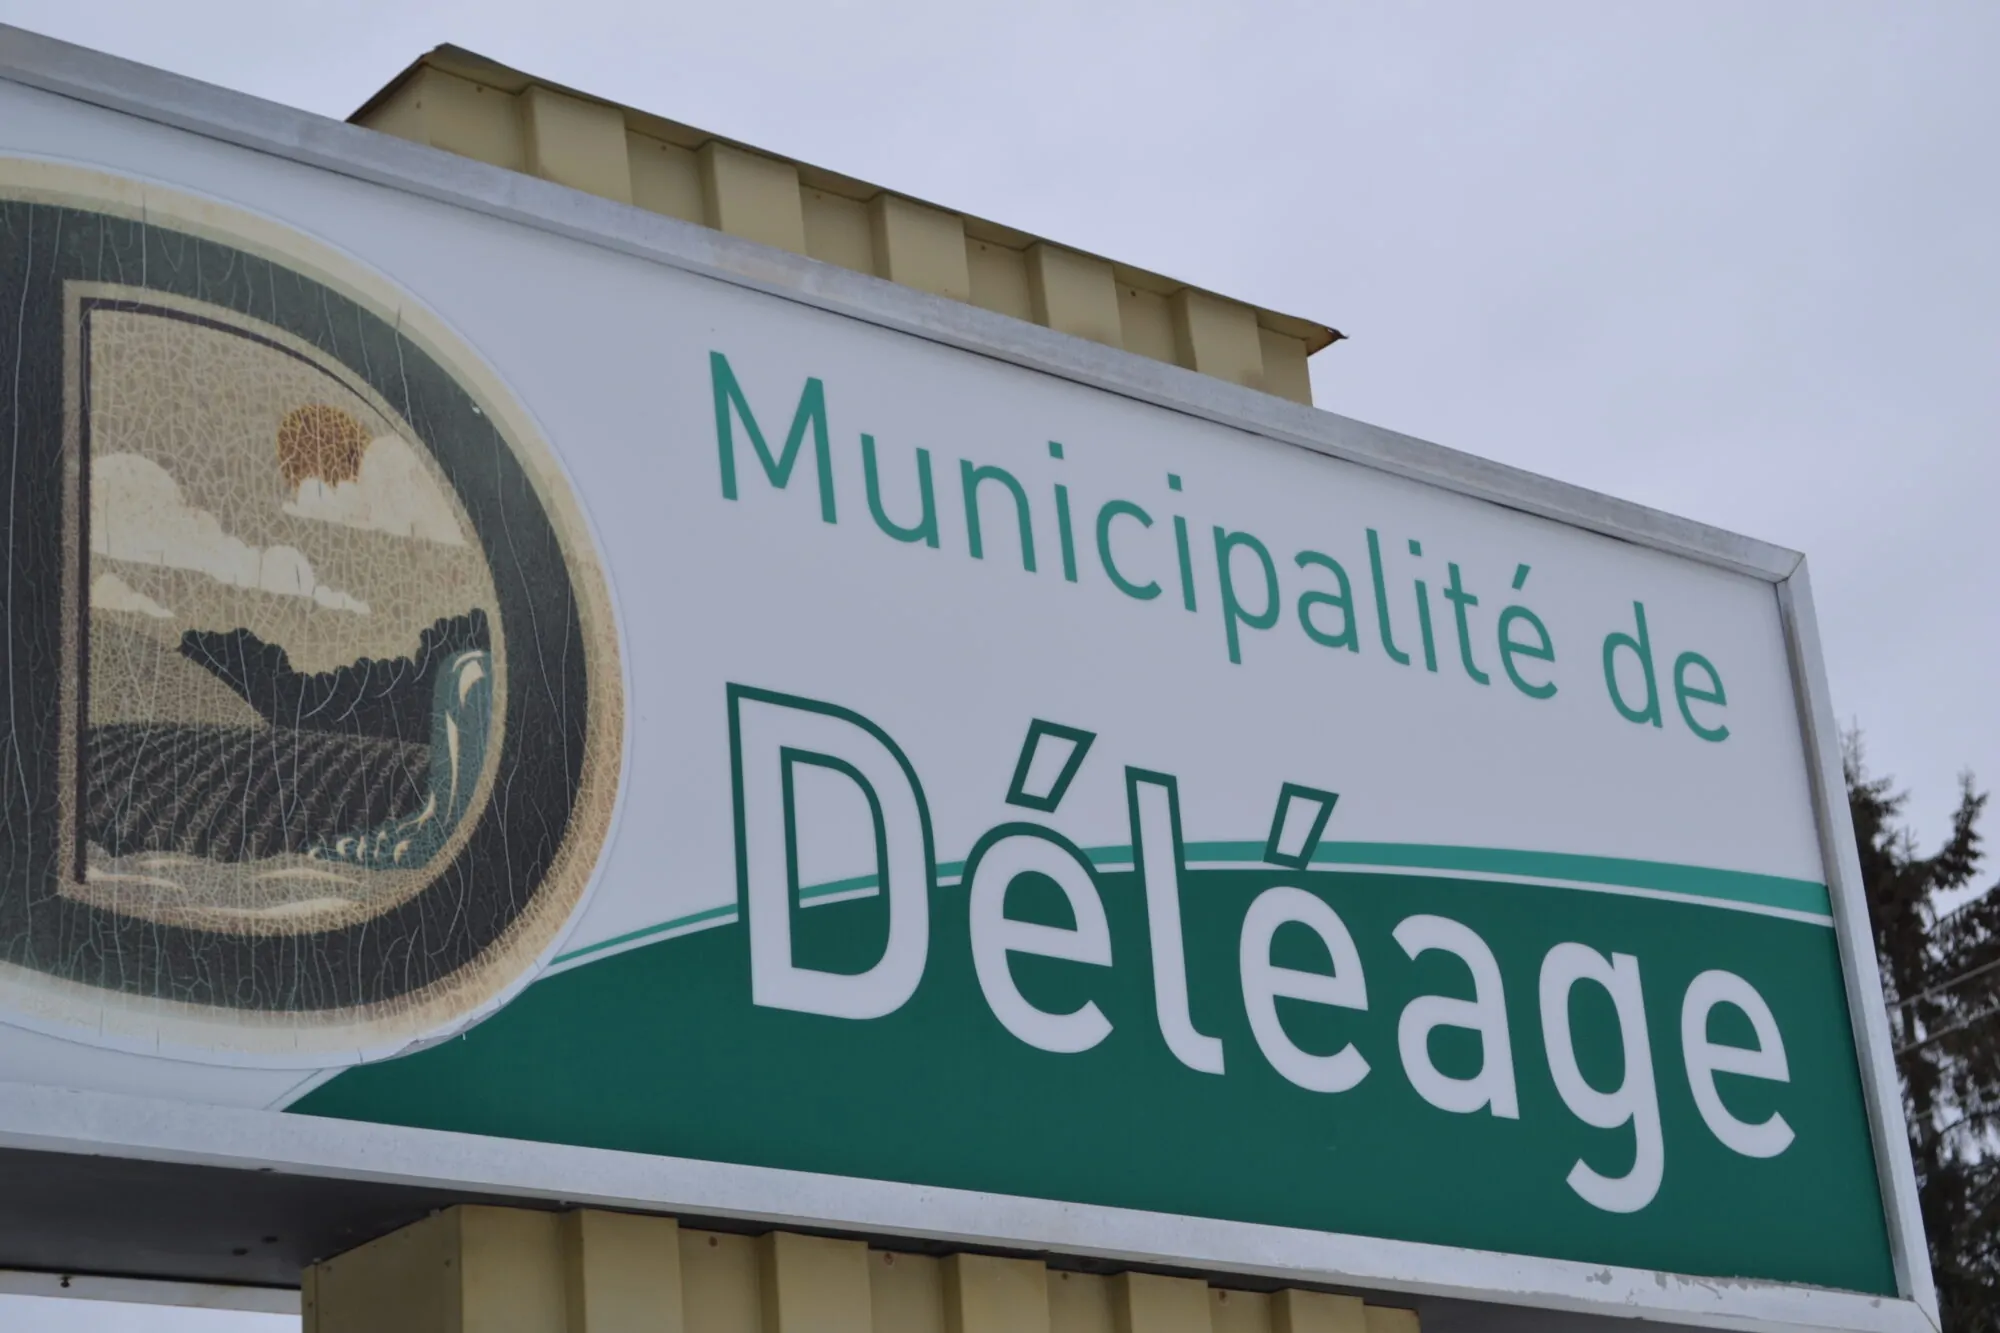 Municipalité de déléage